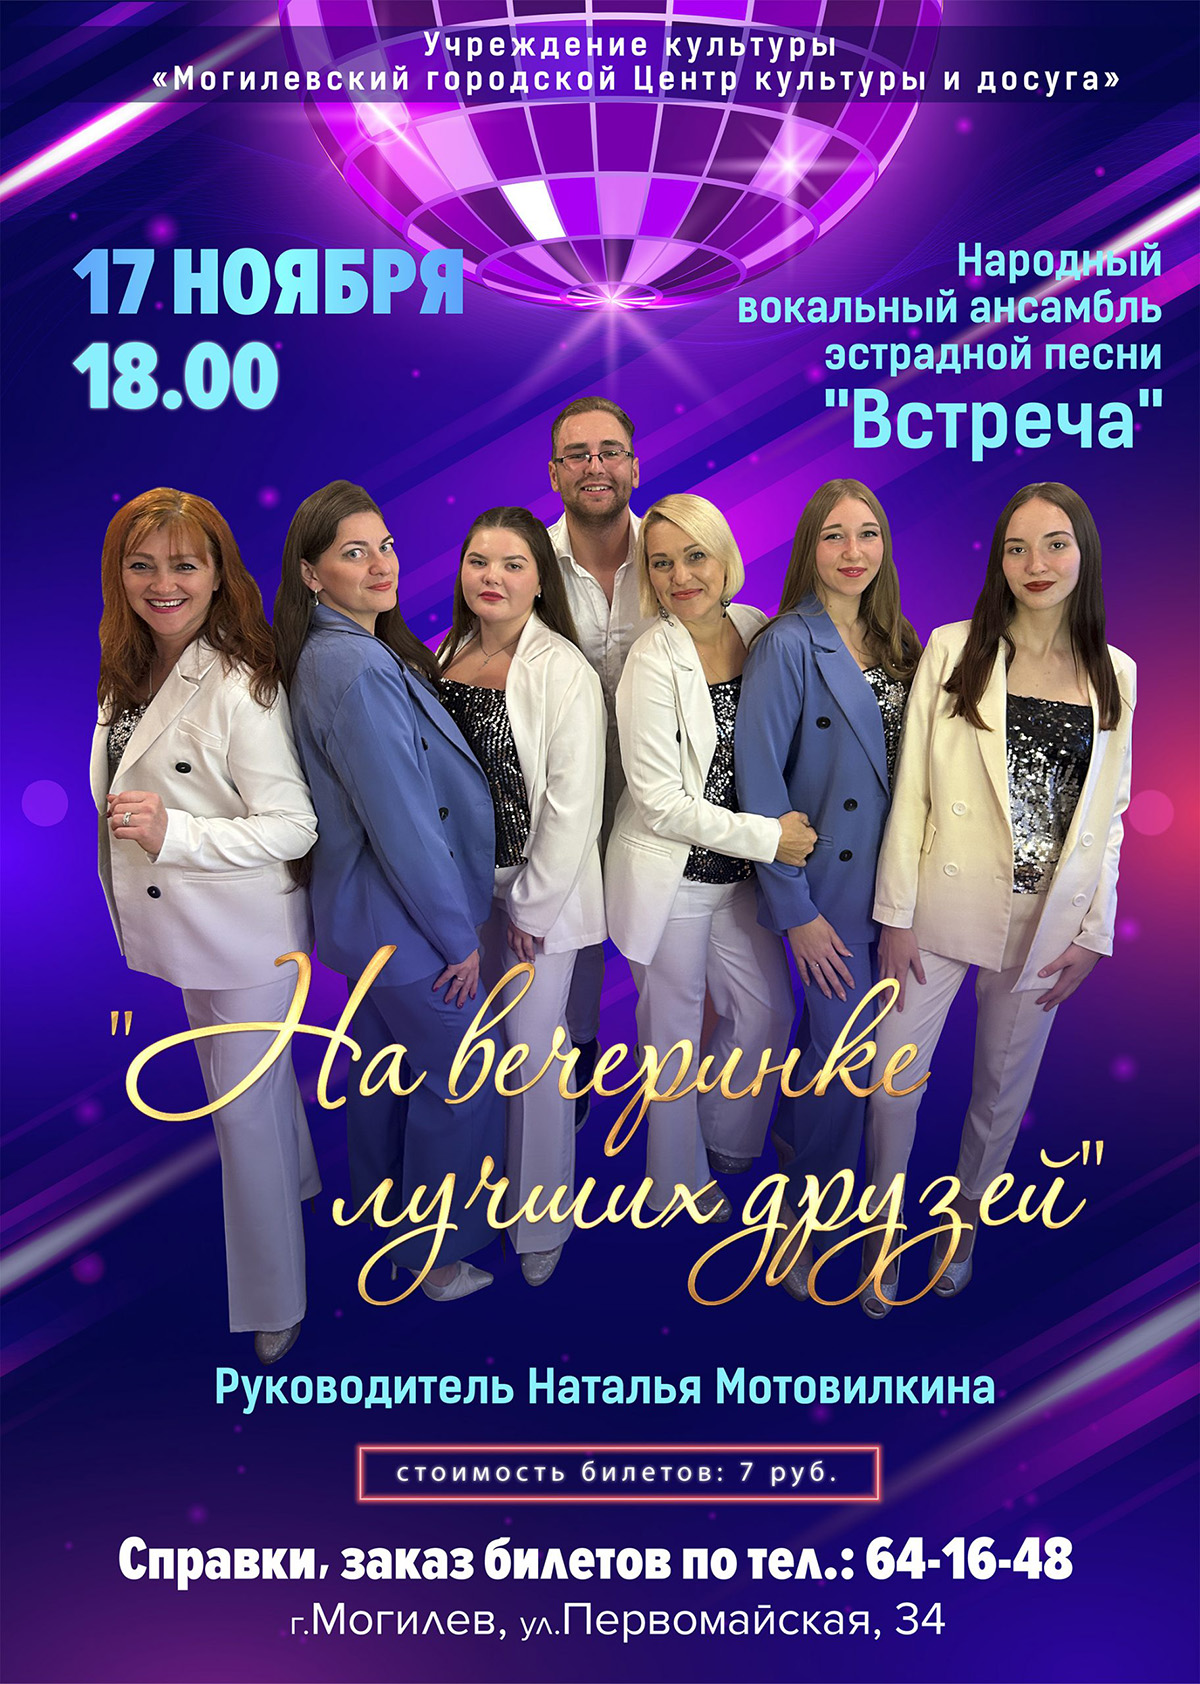 Концертную программу представит в Могилеве 17 ноября вокальный ансамбль эстрадной песни «Встреча»